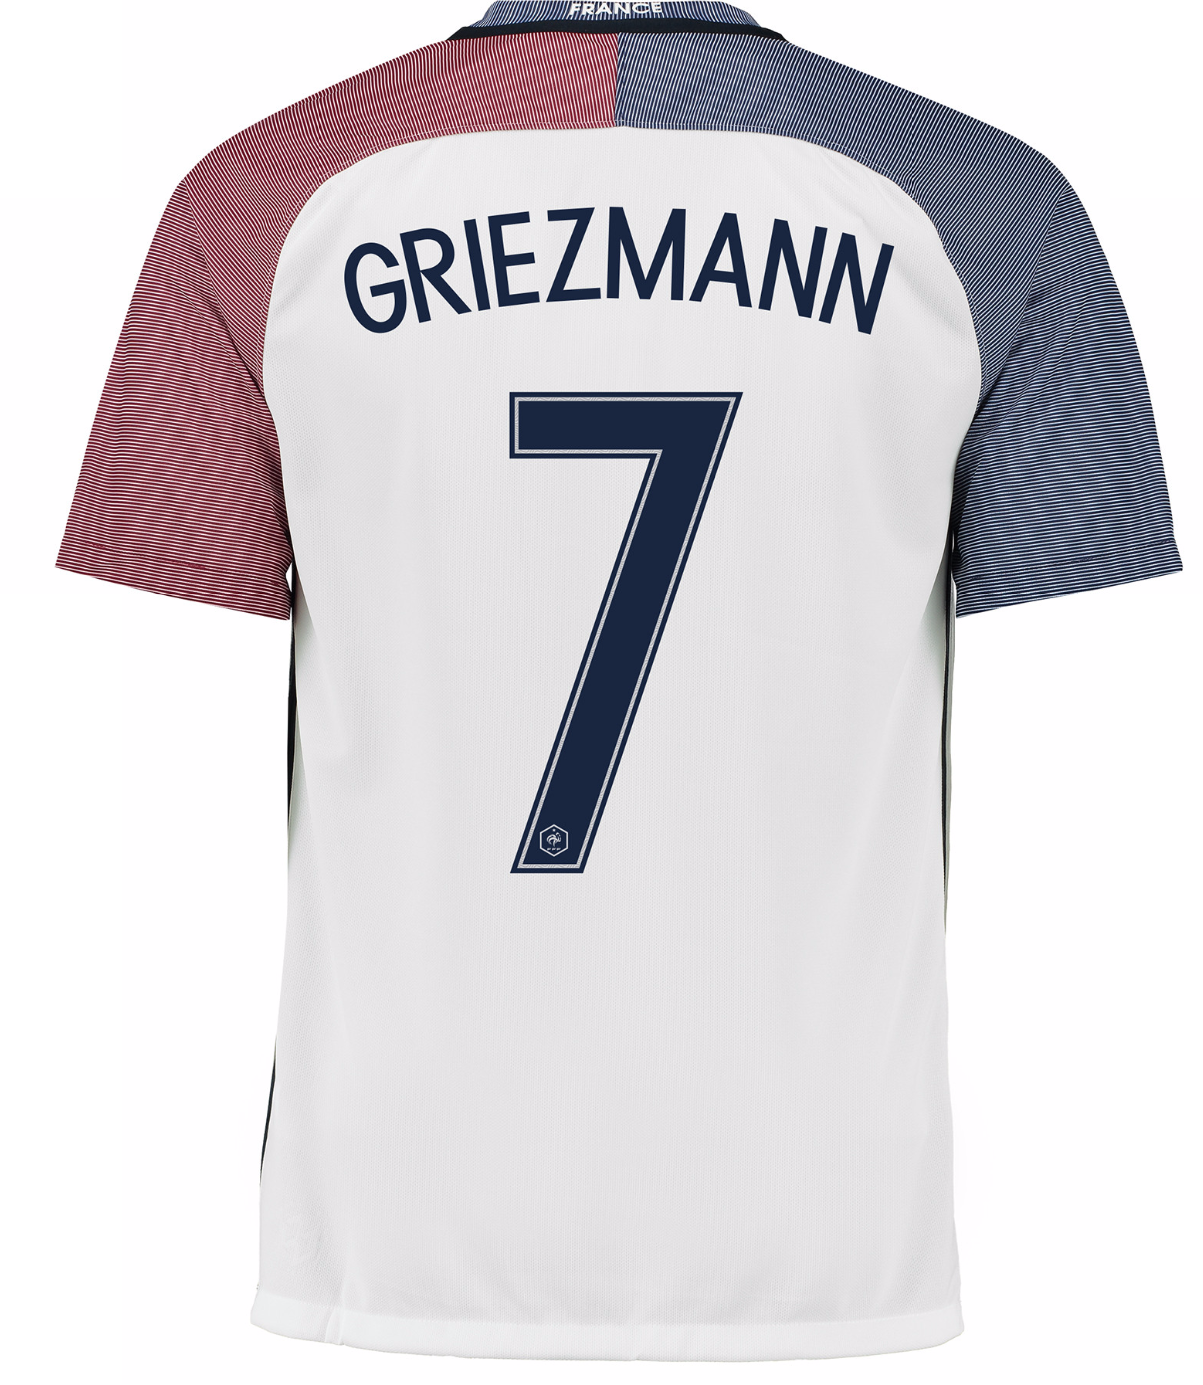 France Away #7 GRIEZMANN Euro 2016 Men Soccer Jersey Football Shirt New ...